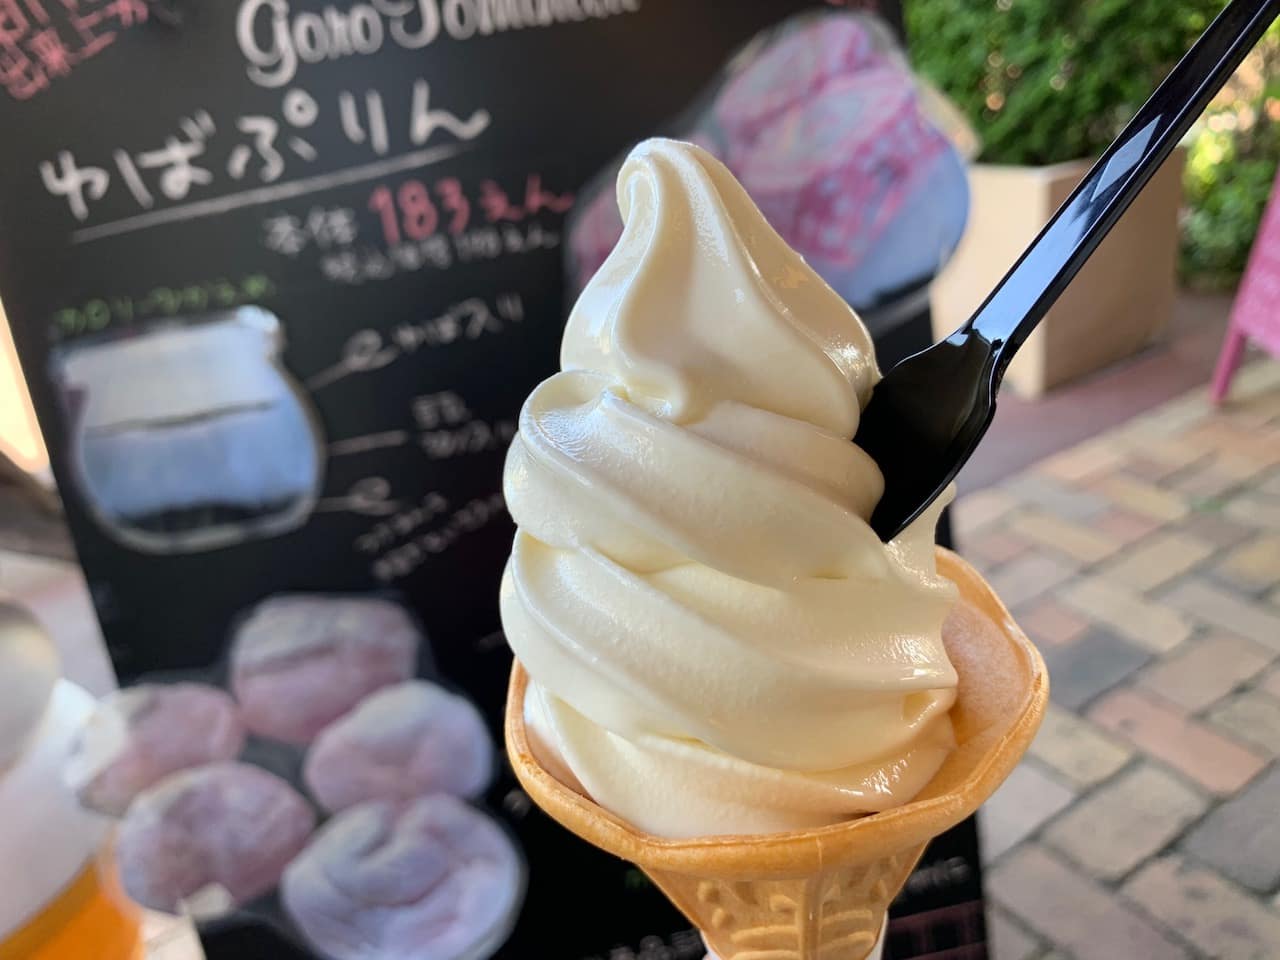 富成伍郎商店の豆乳ソフトクリーム